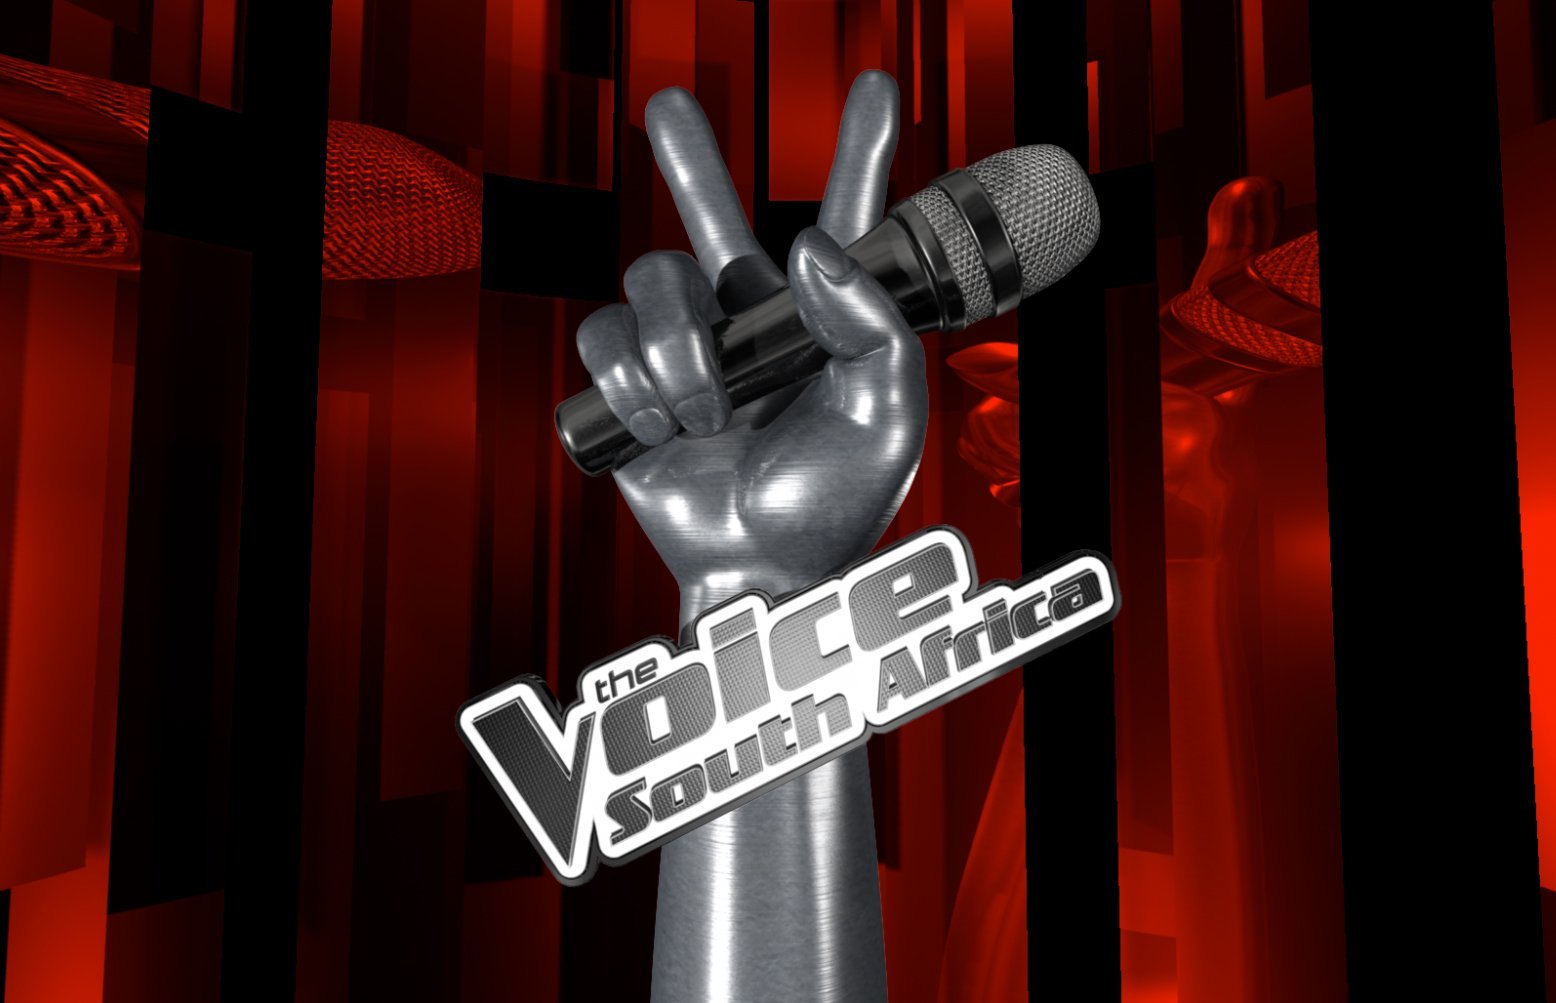 V1 voice. Шоу голос. Шоу голос заставка. Шоу голос логотип. Шоу голос рука с микрофоном.